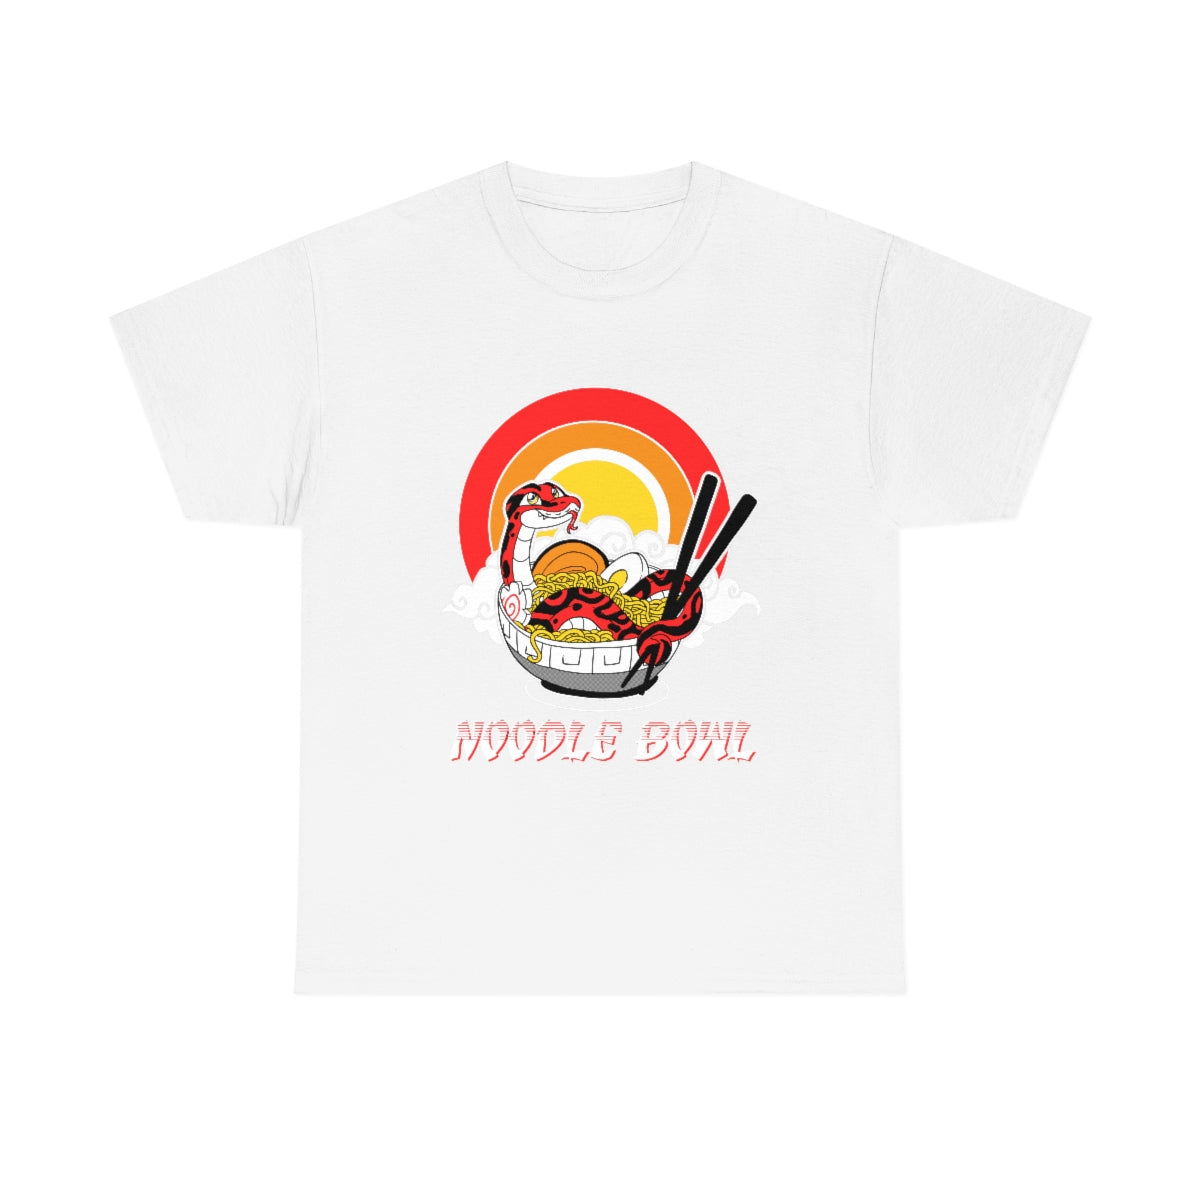 Noodle Bowl - T-Shirt T-Shirt Crunchy Crowe White S 